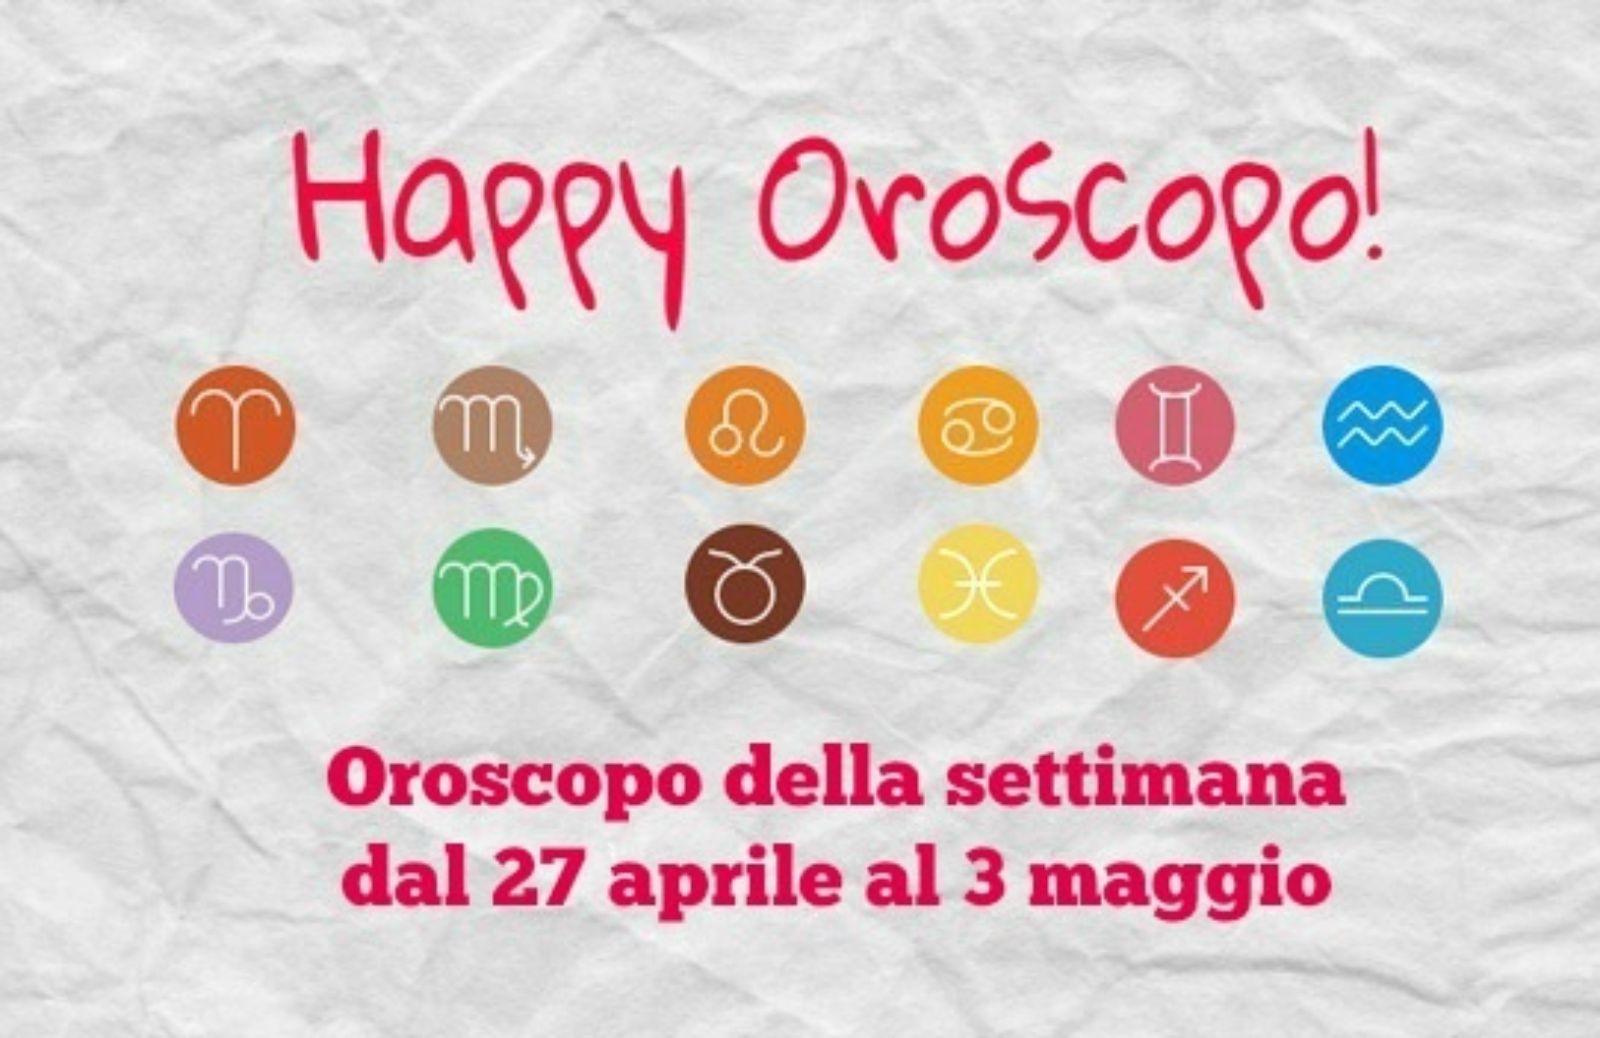 Happy Oroscopo della settimana: cosa dicono le stelle dal 27 aprile al 3 maggio